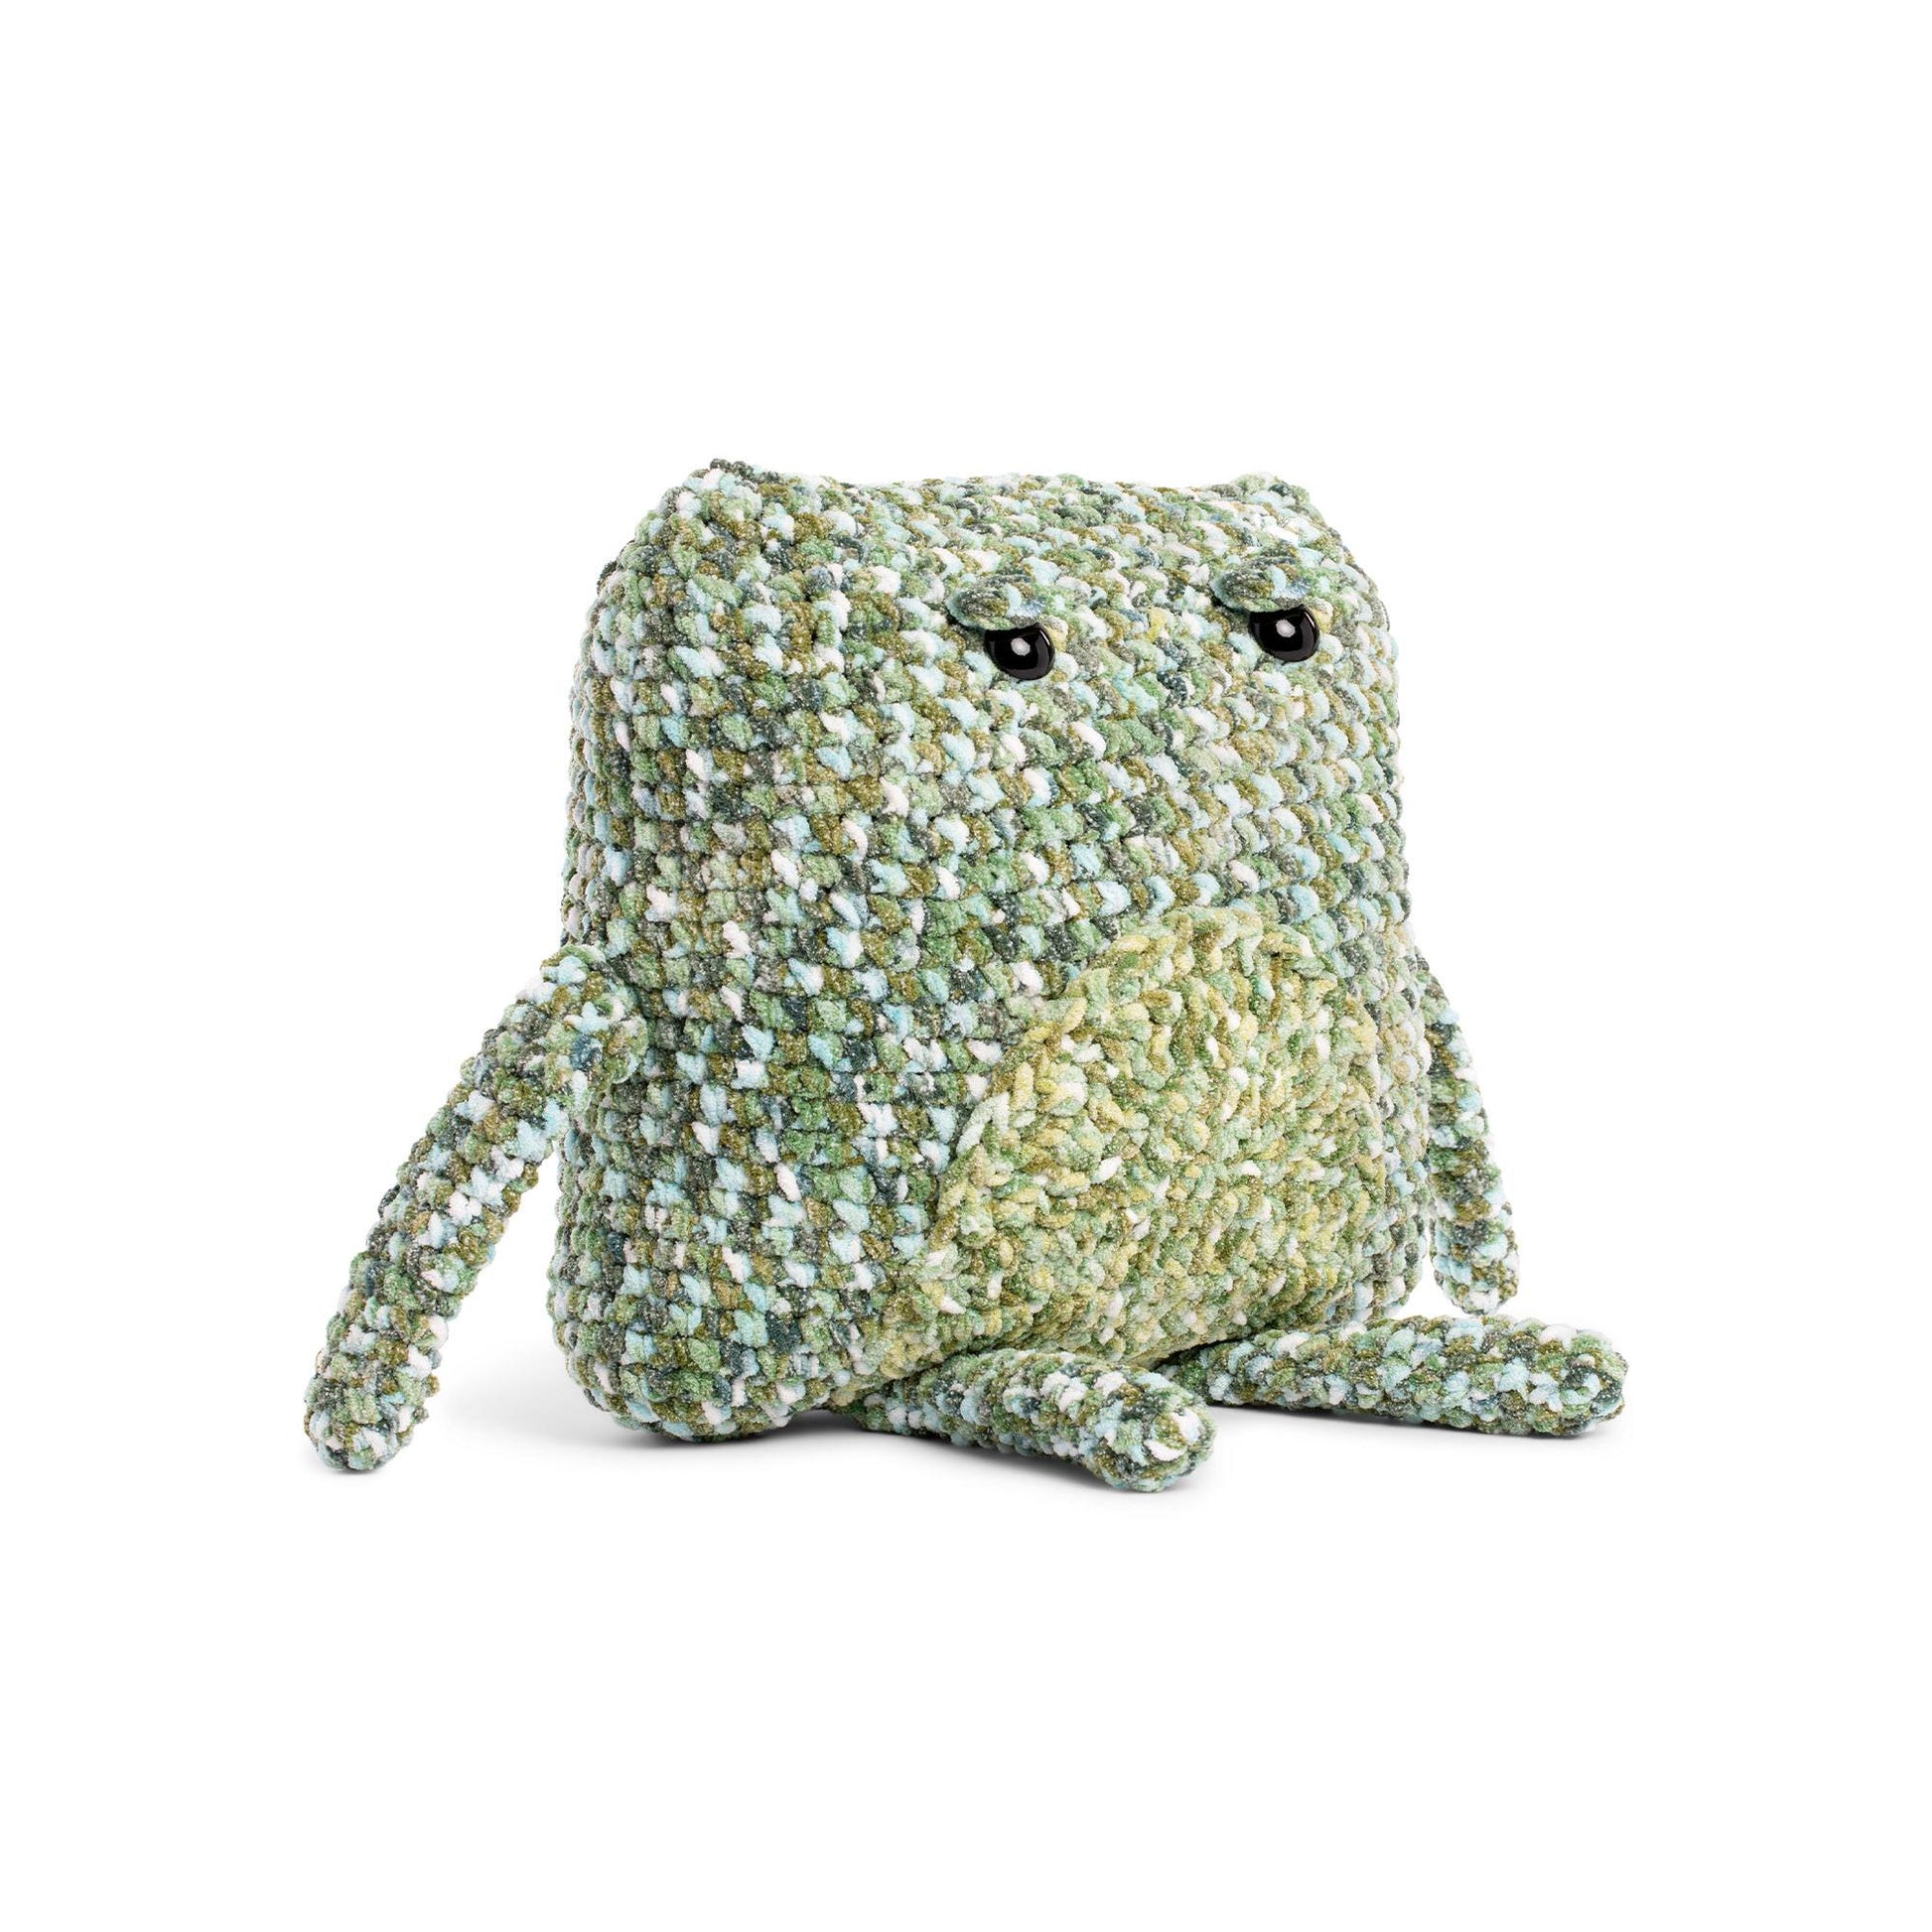 Free Bernat Freddy the Frog Crochet Toy Pattern